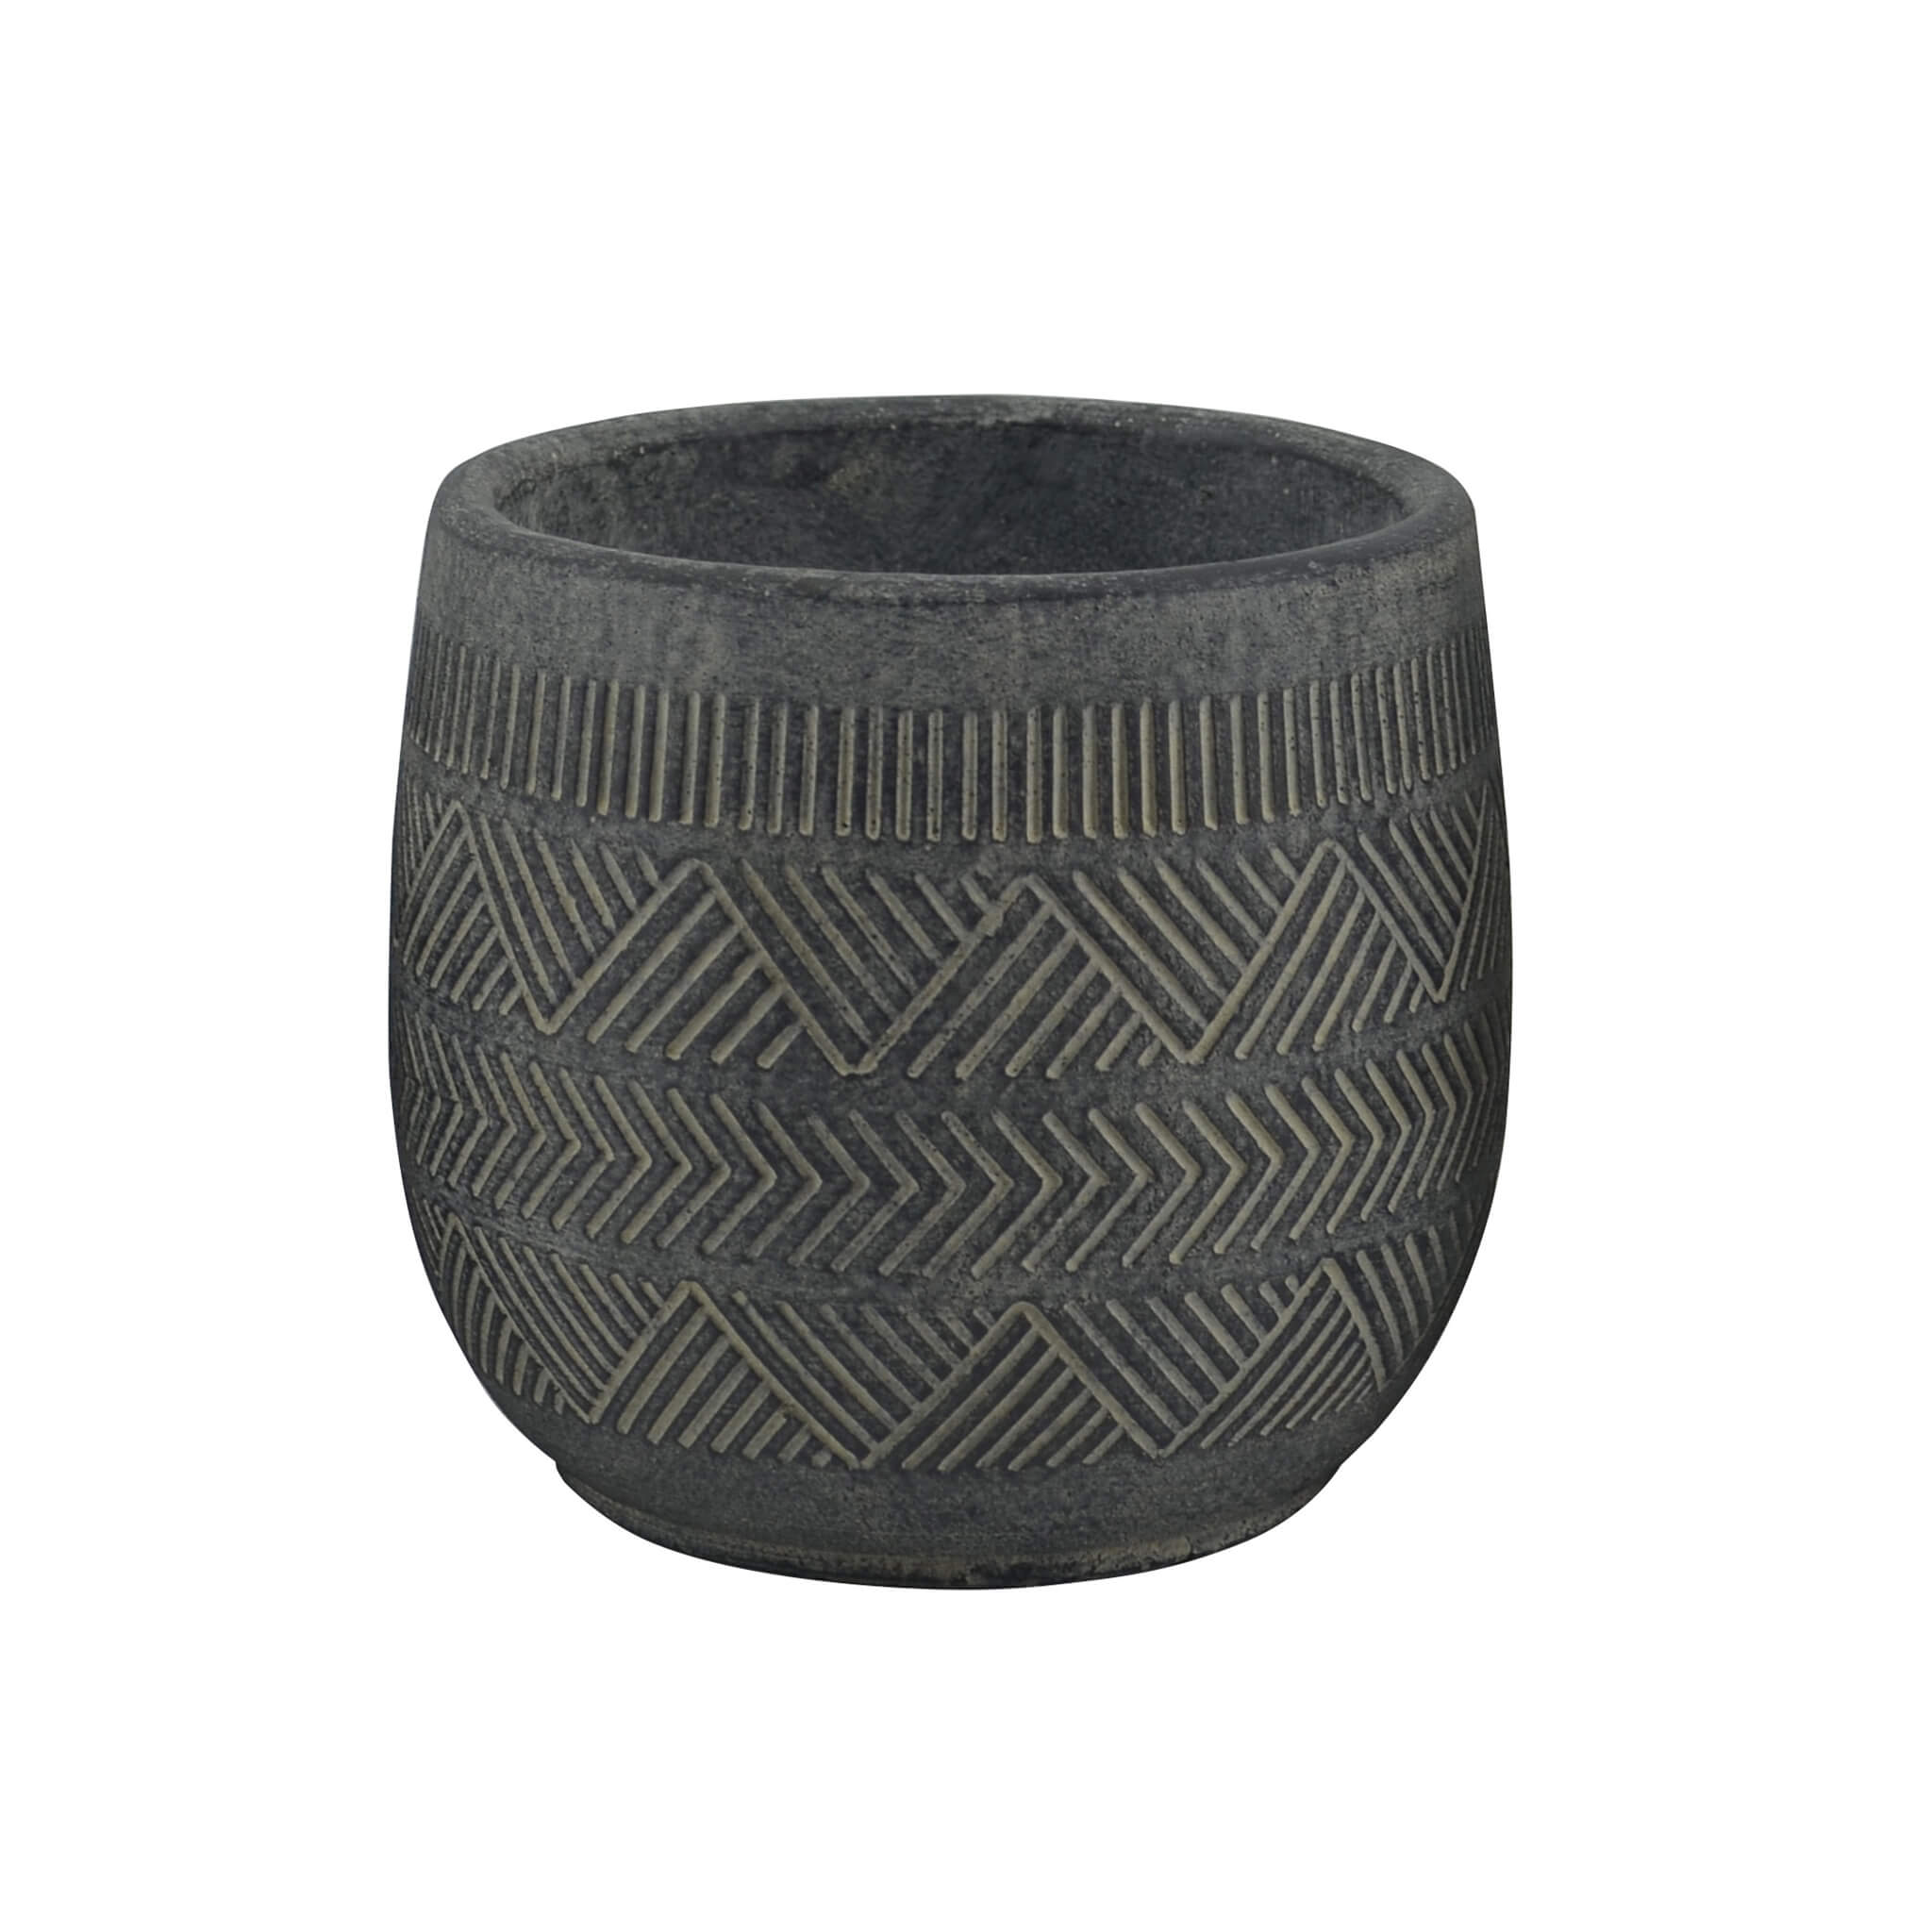 Milani Home vaso in fibra sintetica di design moderno industrial cm 15,5 x 15,5 x 14 h Antracite 16 x 14 x 16 cm